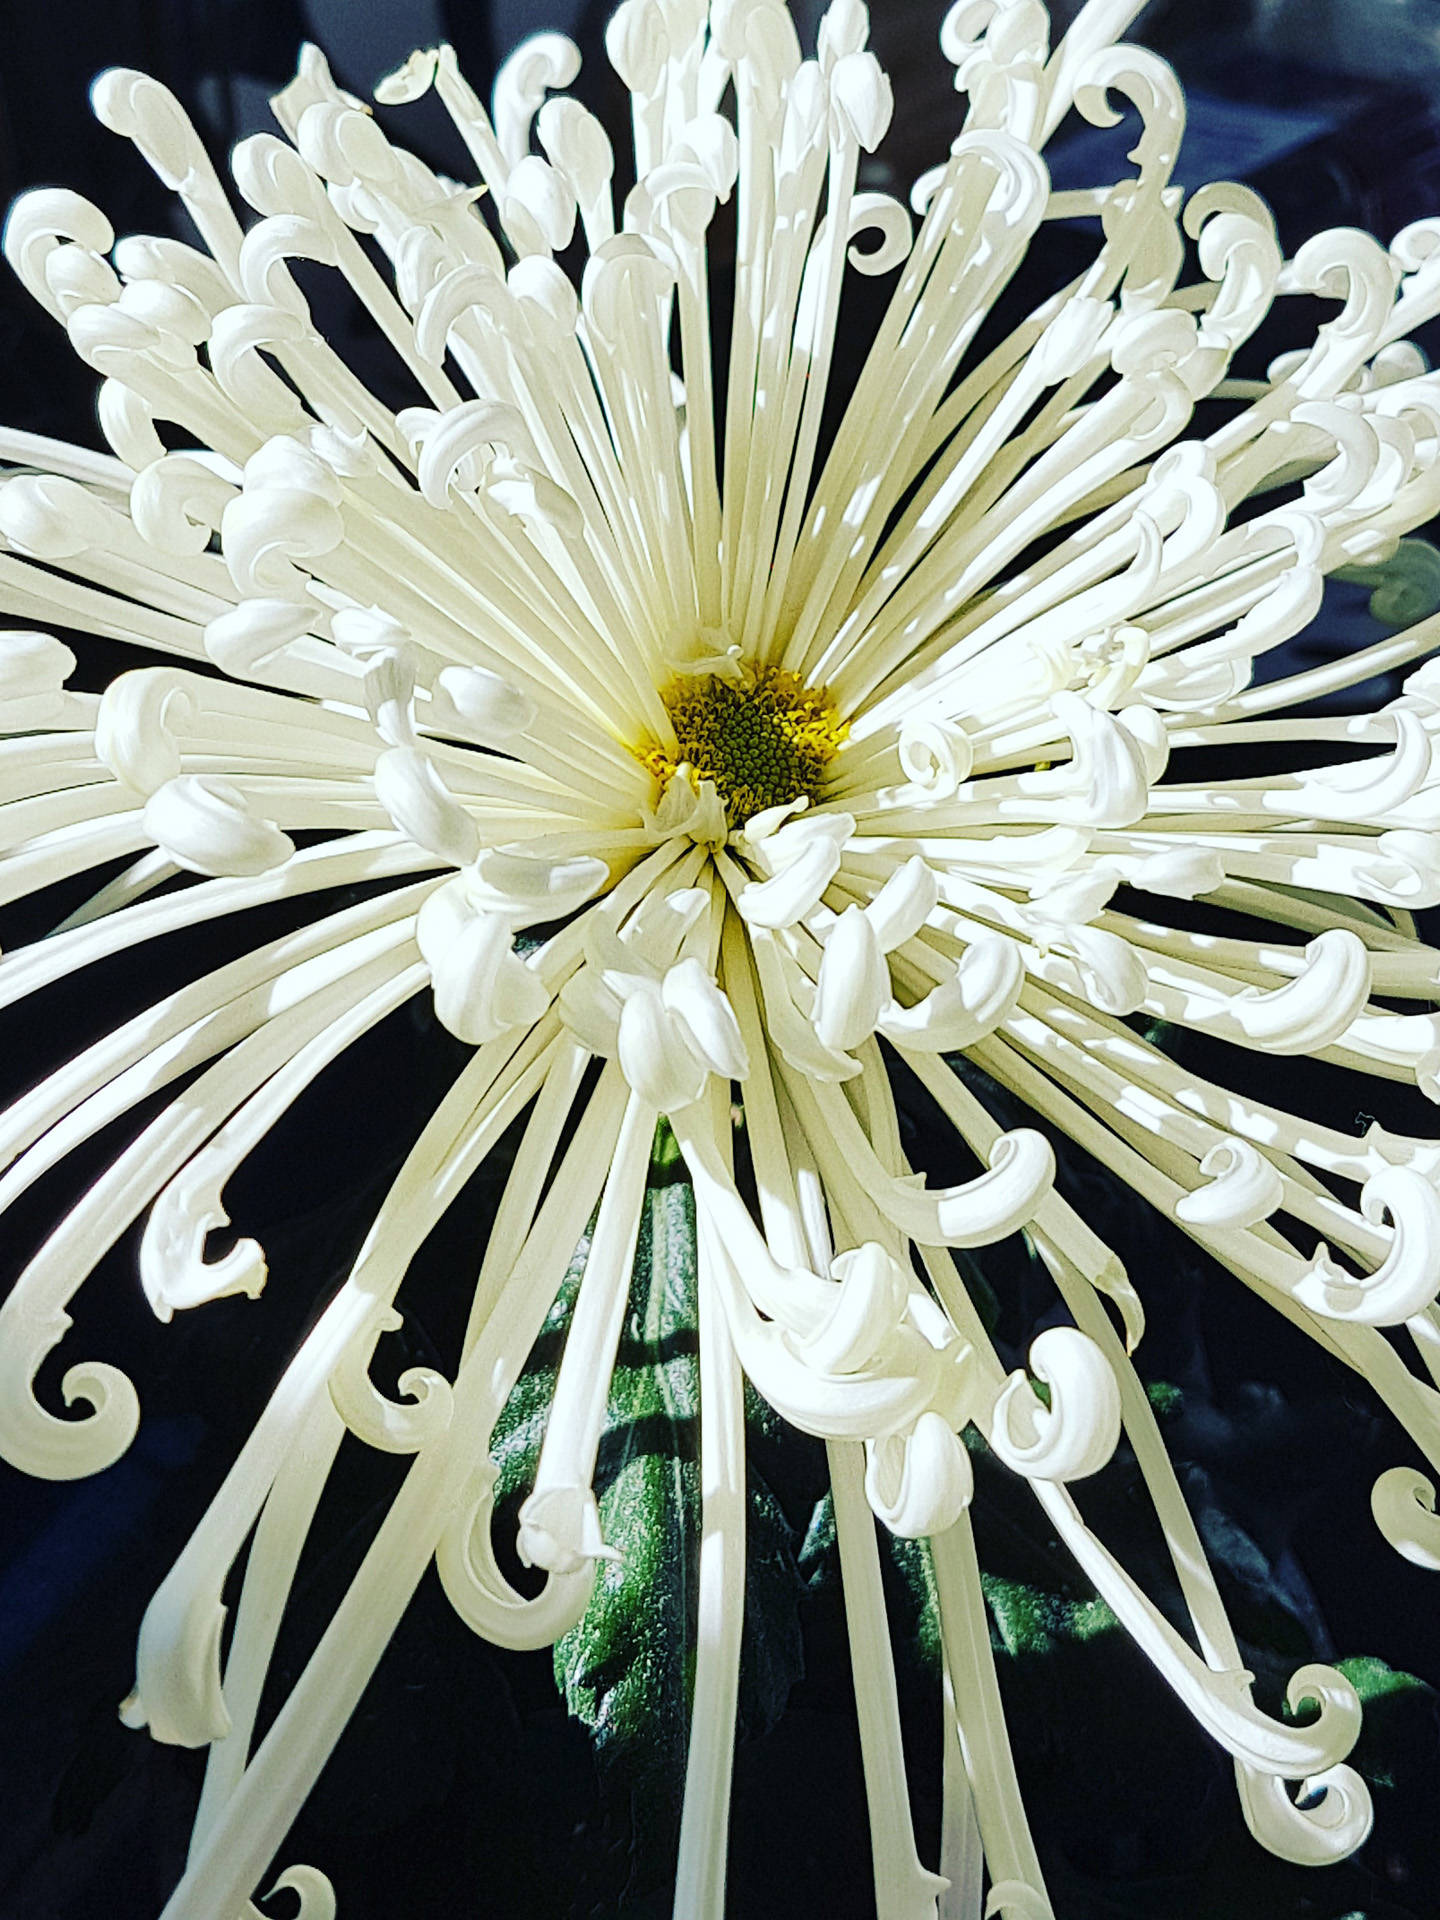 Floral white veggbilde gir en flott energi. Fra nordic photodesign